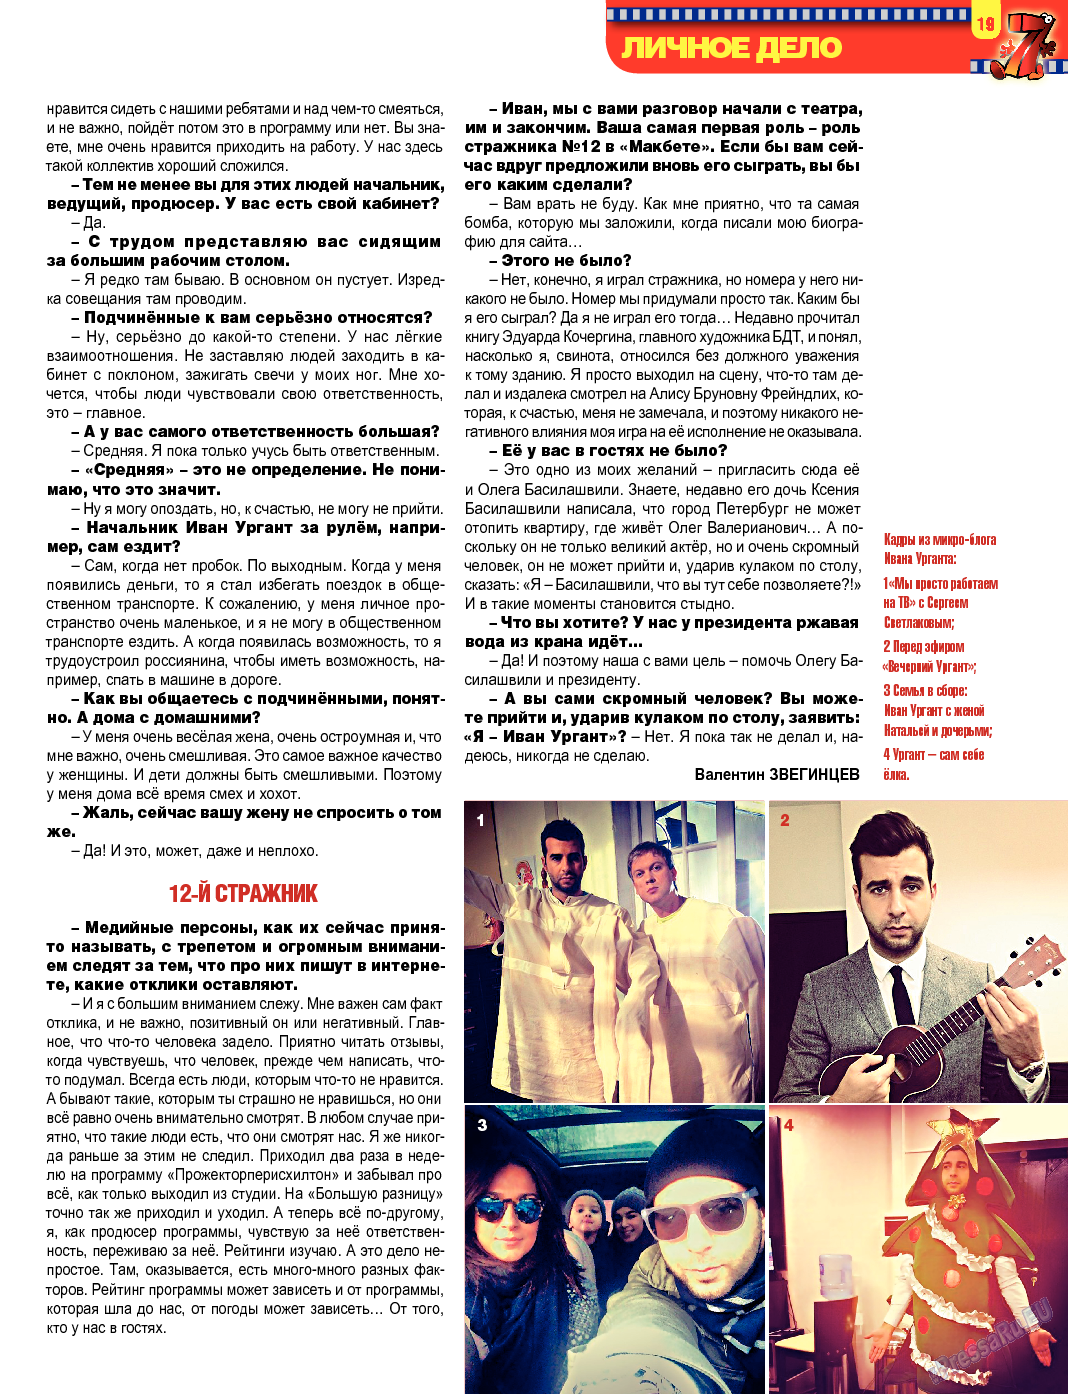 7плюс7я, журнал. 2014 №3 стр.19